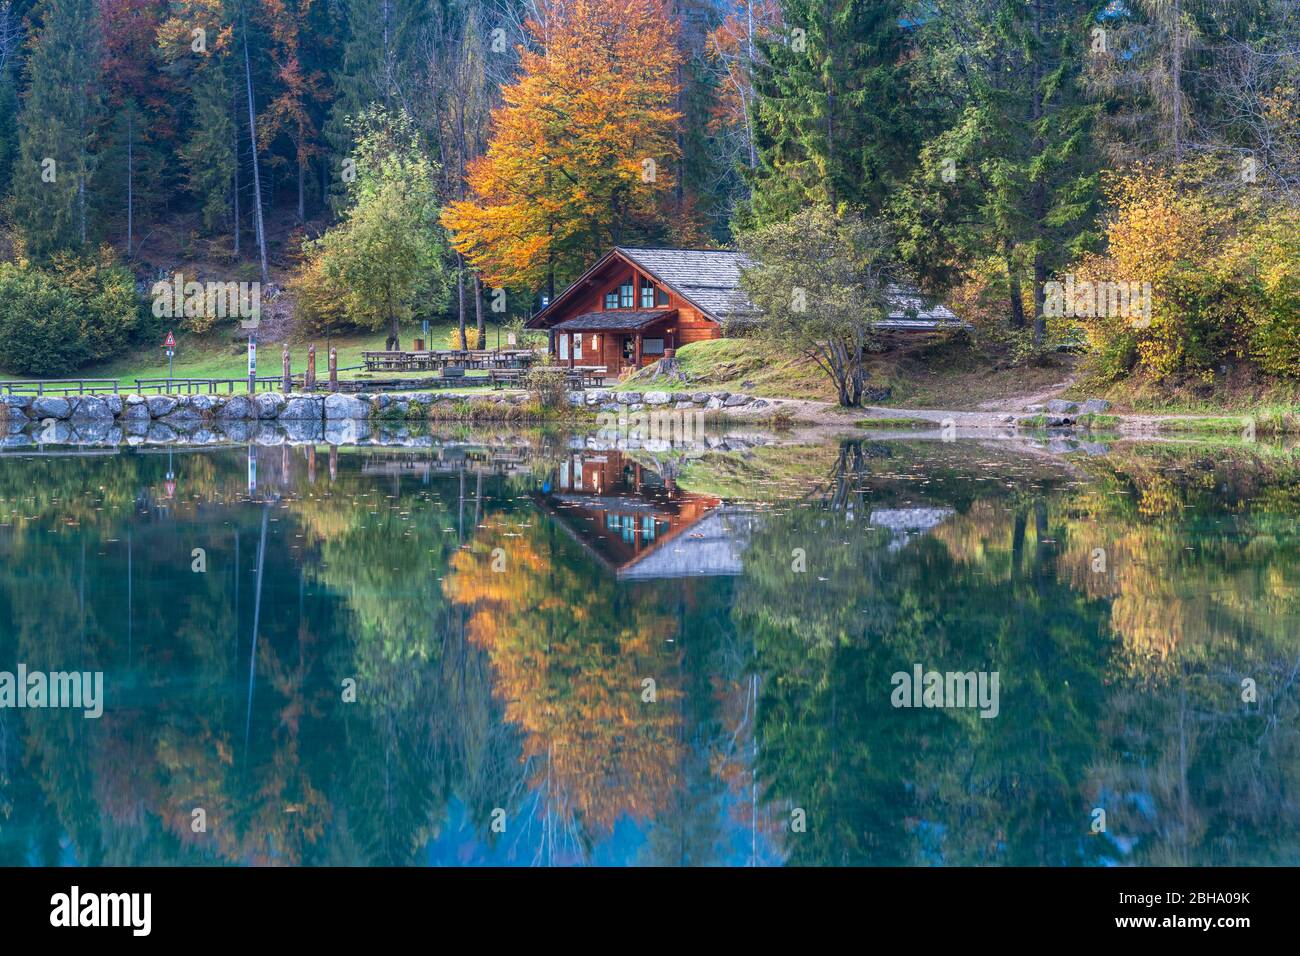 Lago Welsperg, Val canali, Primiero, Trentino Alto Adige, Paneveggio e pale di San Martino, parco naturale Foto Stock